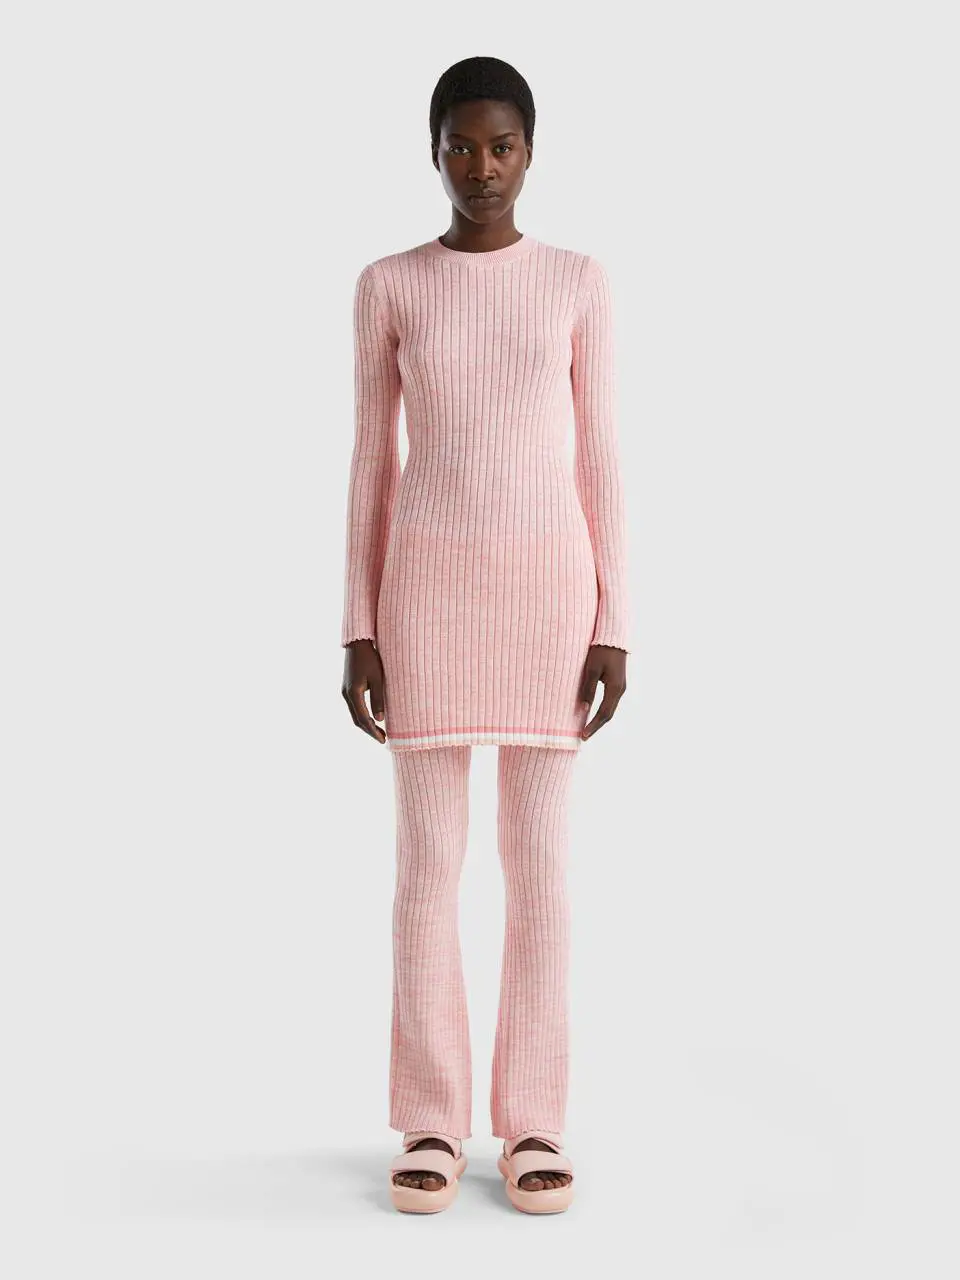 Benetton short pink sweater dress. 1